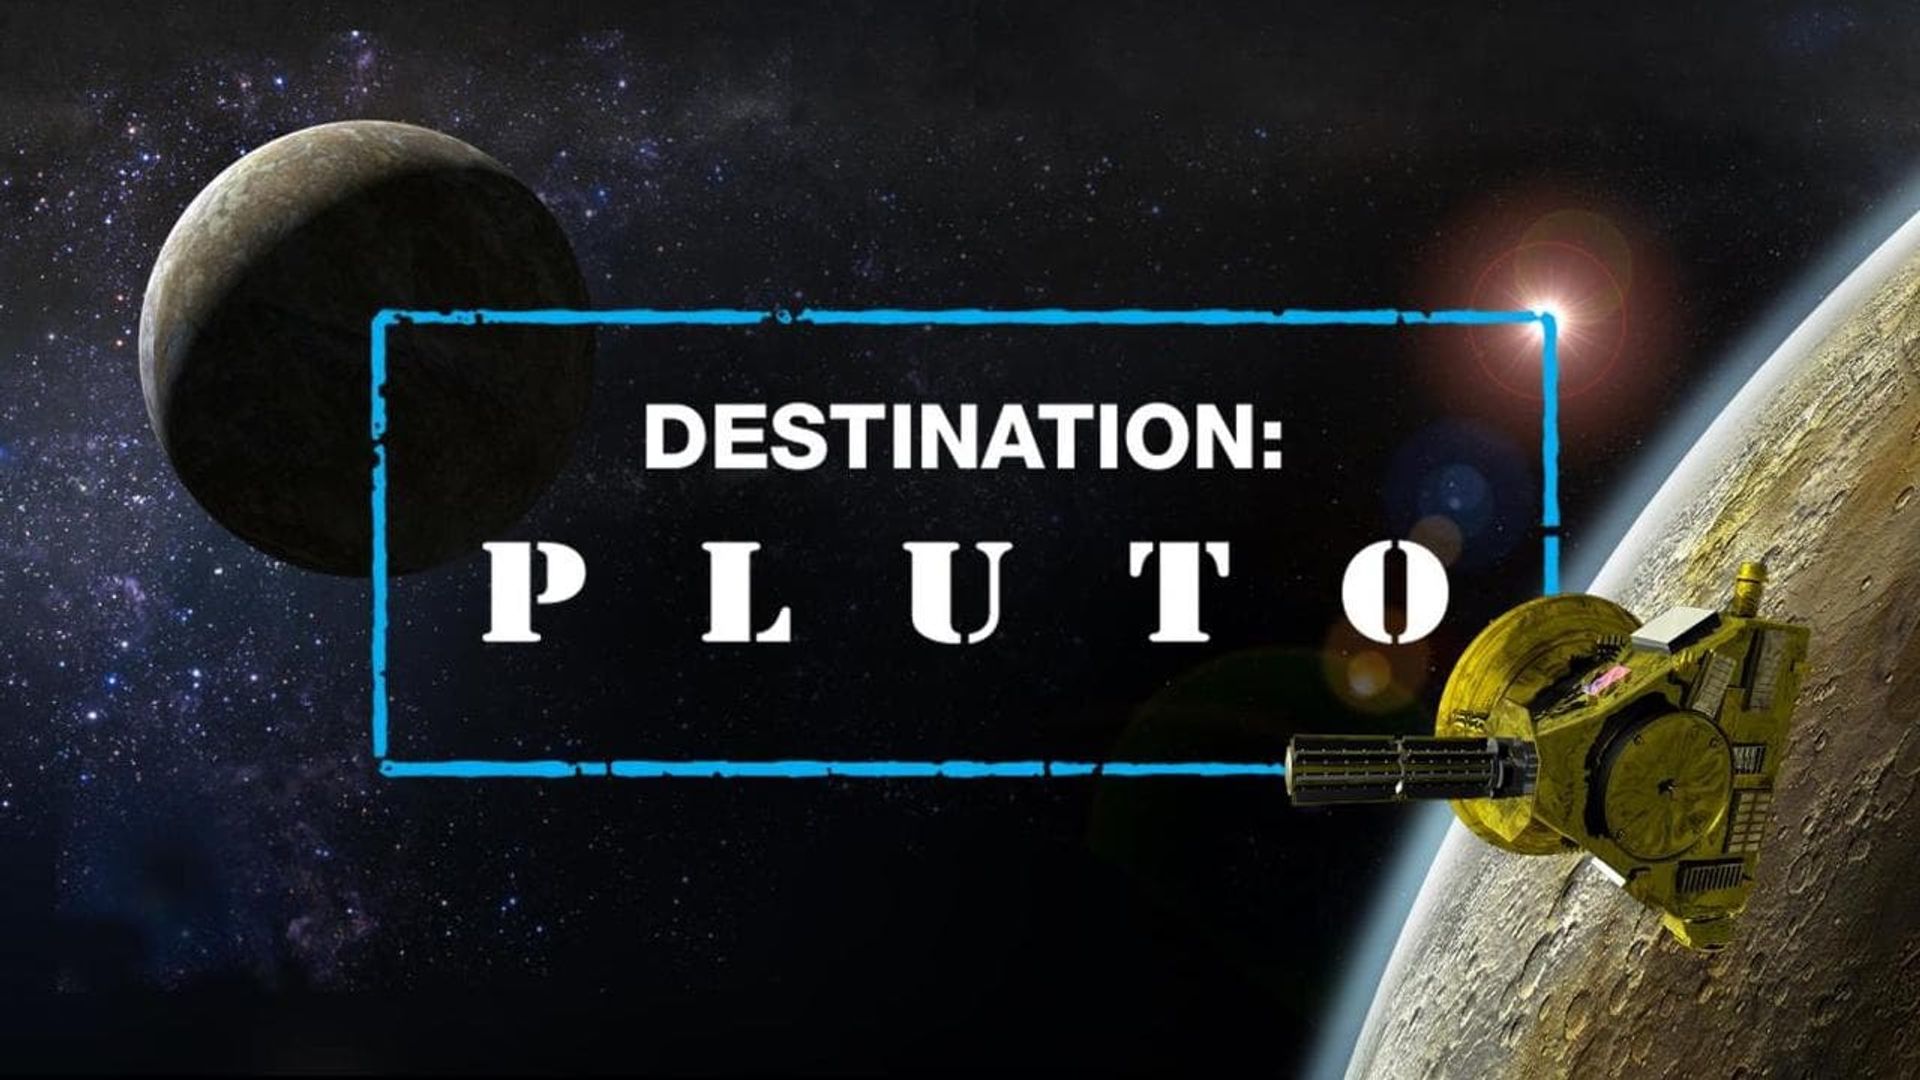 Destination: Pluto background